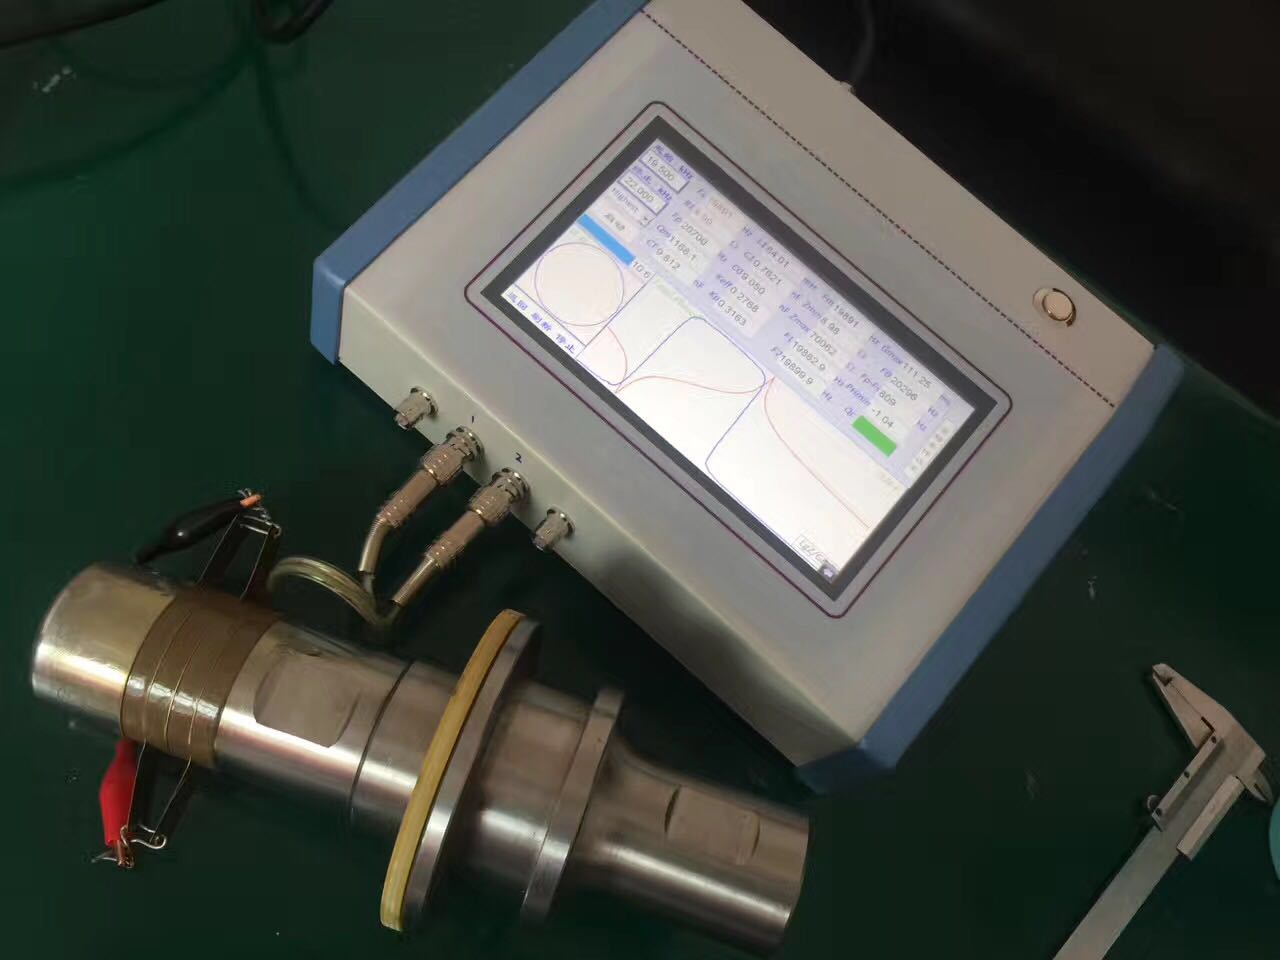 Transdutor ultra-sônico e analisador de buzina ou testes e ajustes energia ultra-sônica transdutores